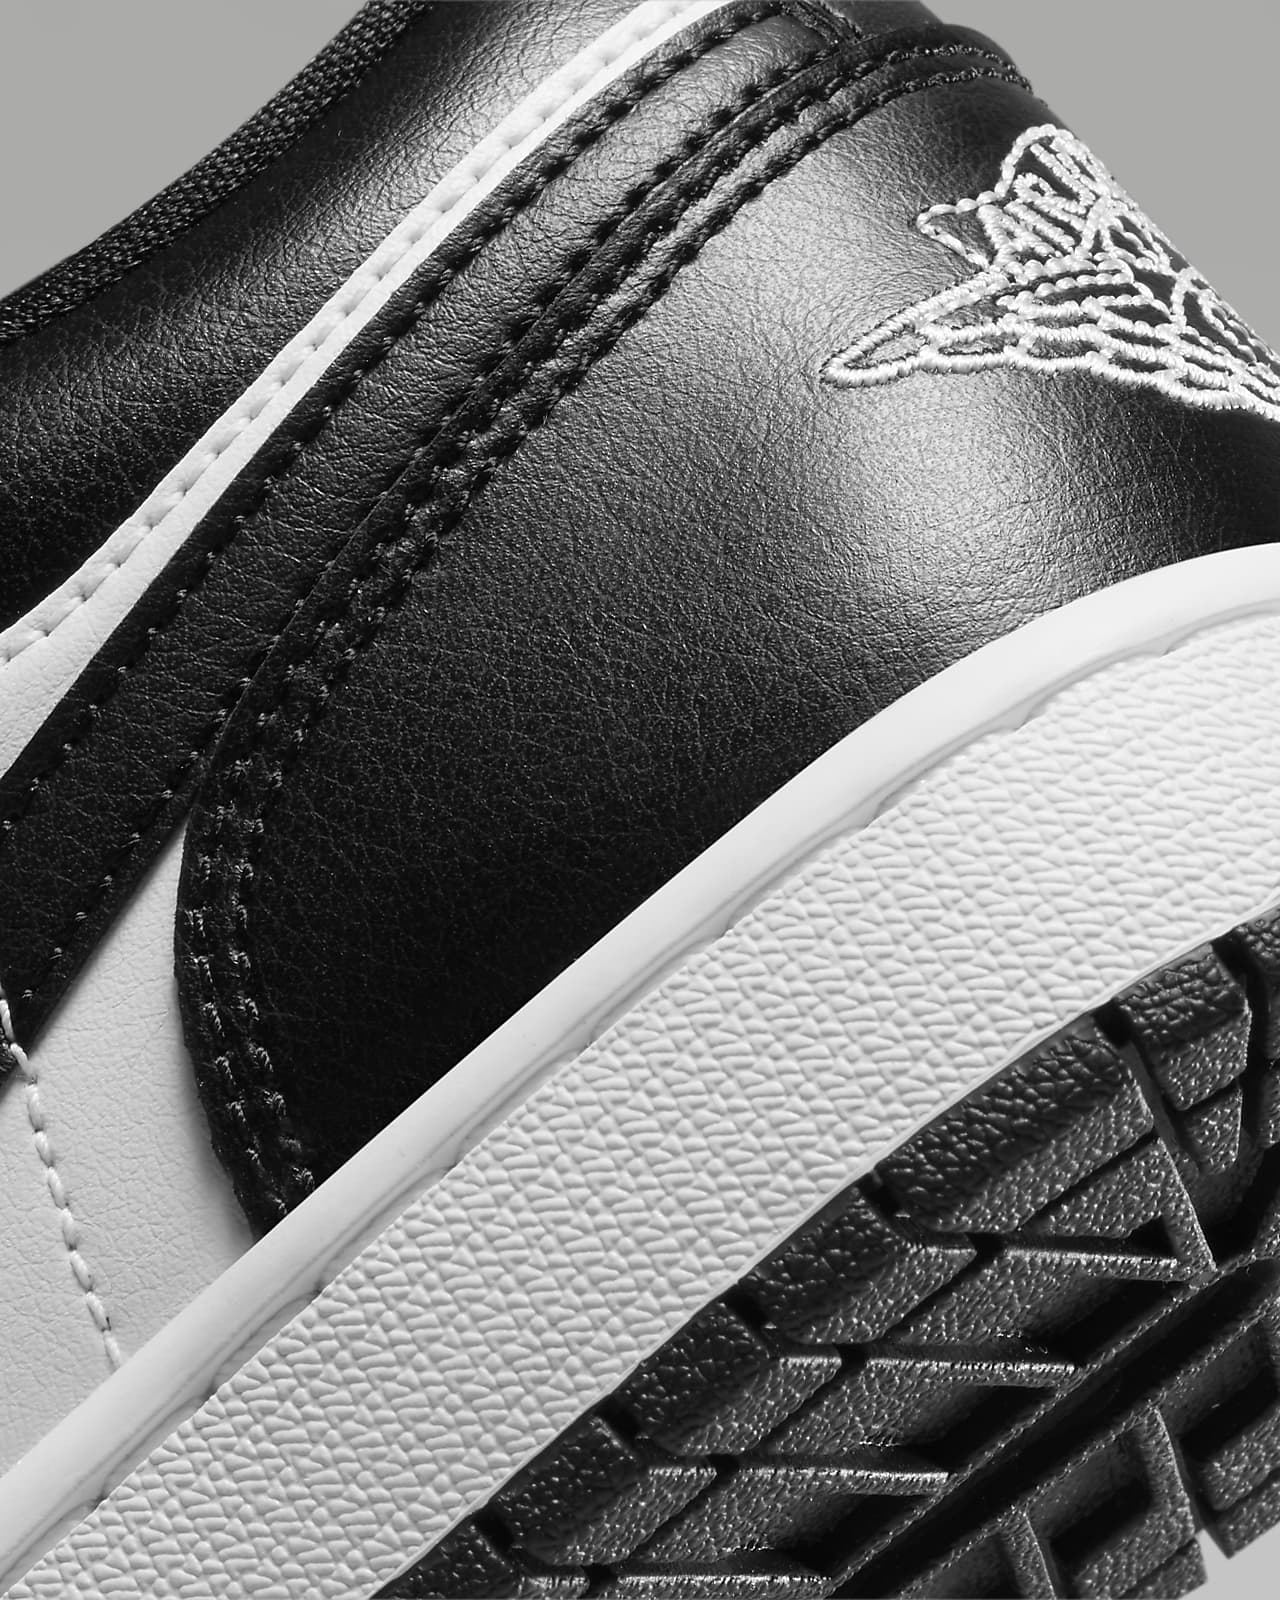 Nike WMNS Air Jordan 1 Low "White/Black"